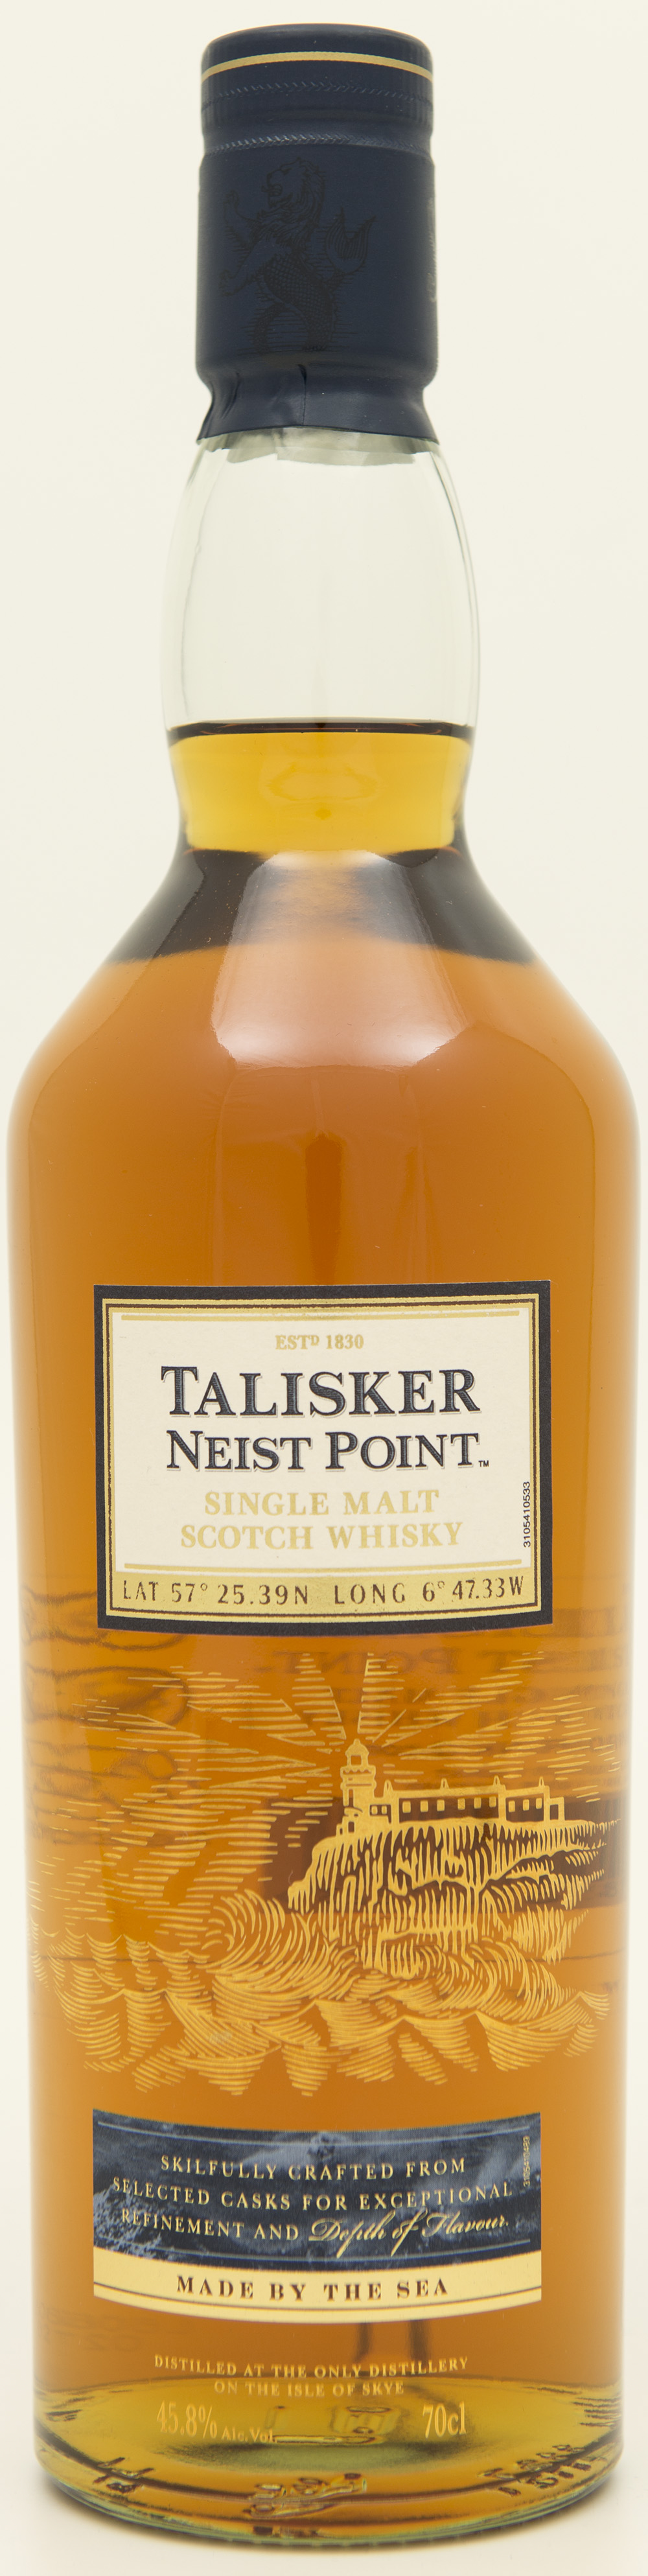 Billede: DSC_1149 - Talisker Neist Point - bottle front.jpg